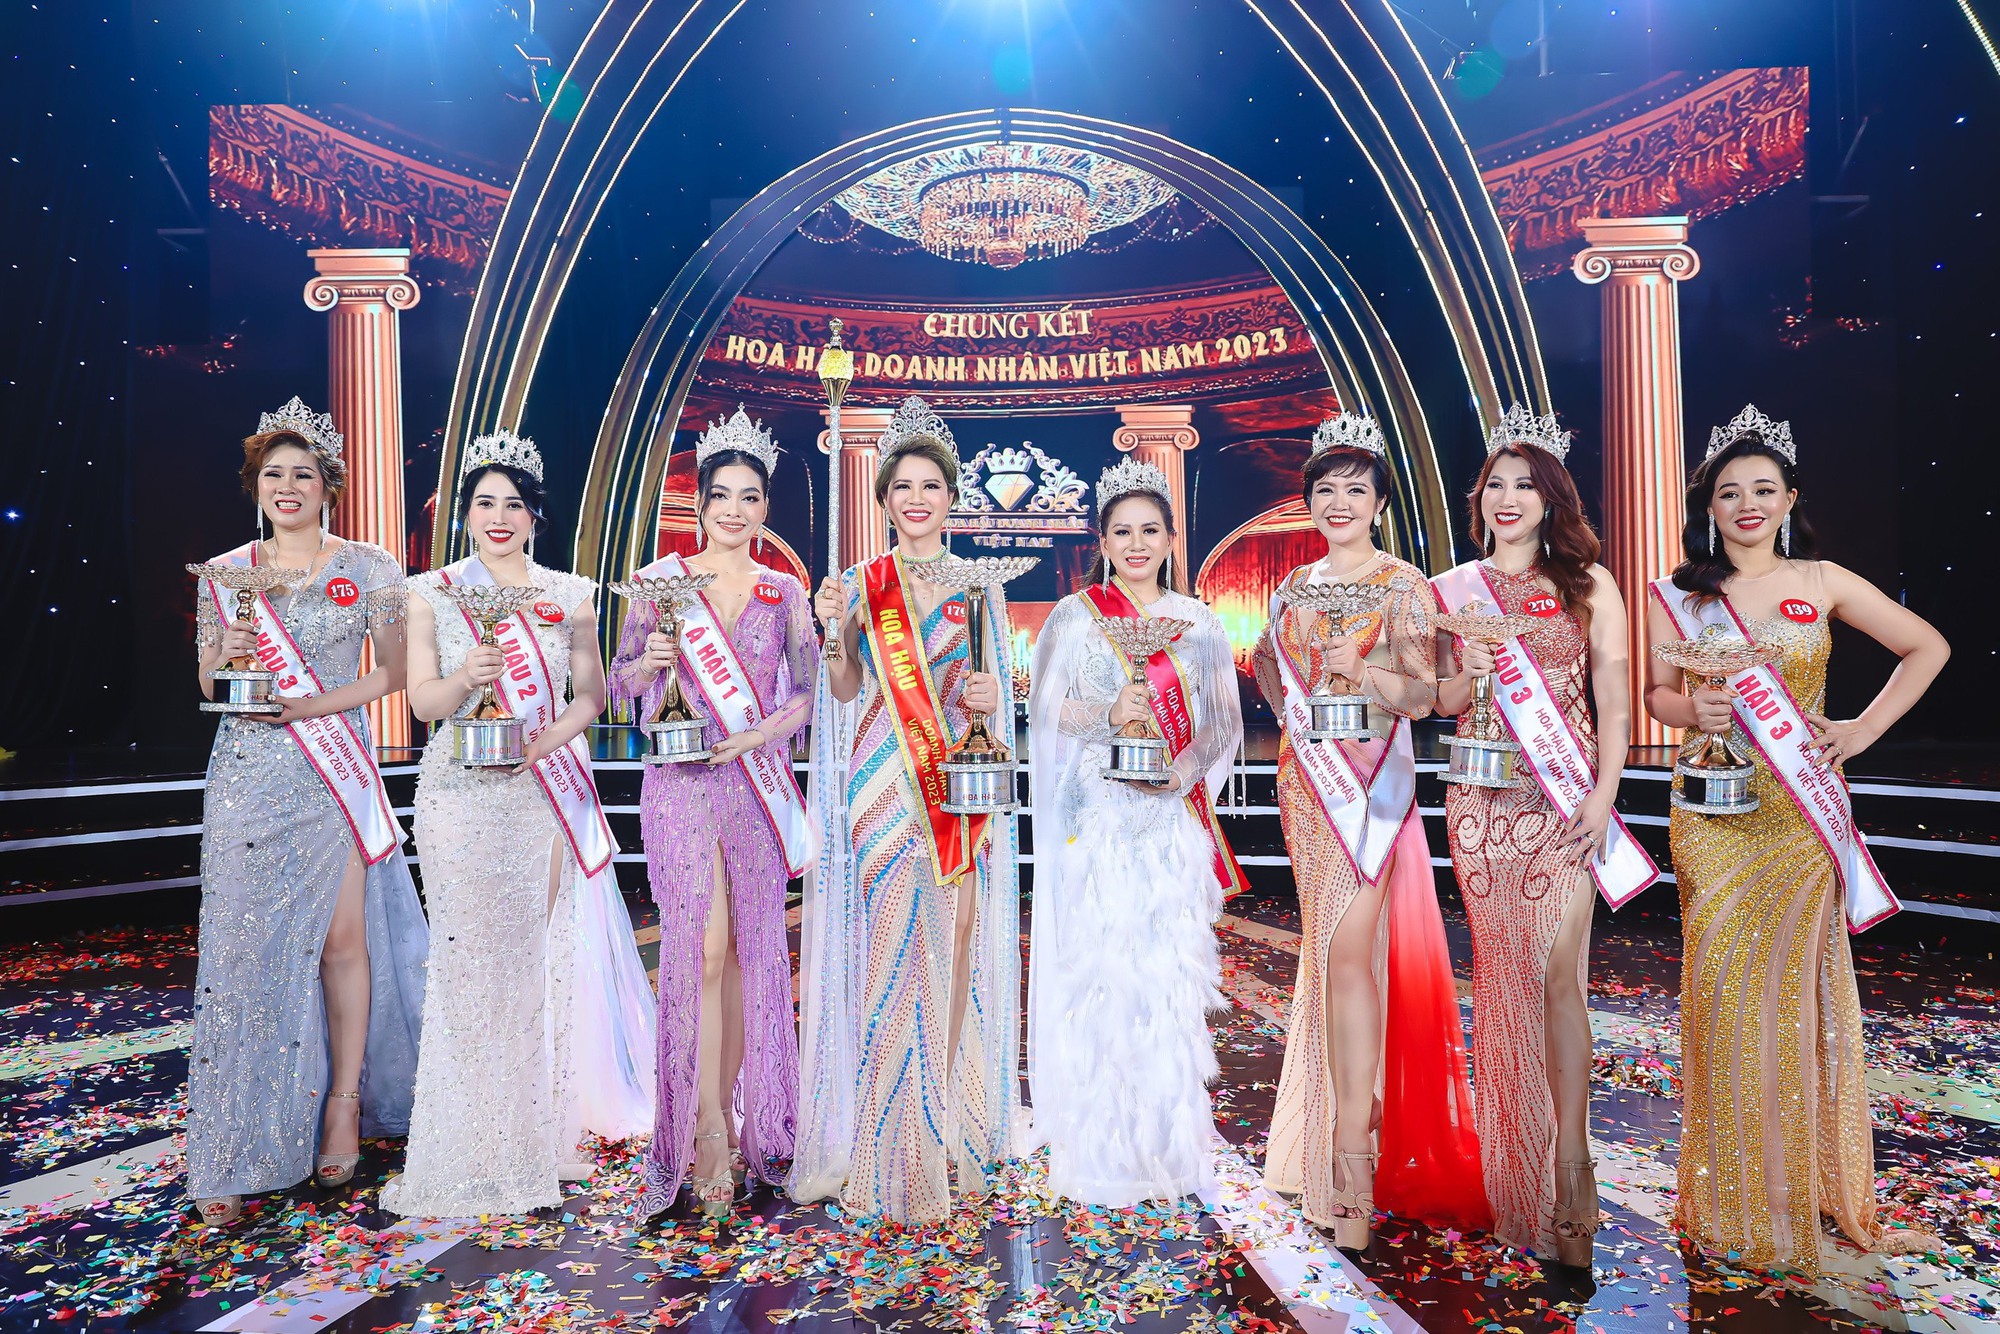 Chung kết Hoa hậu Doanh nhân Việt Nam 2023 do công ty Topstar tổ chức vào tháng 3 tại TP Đà Nẵng. Hiện, đơn vị này đang tranh chấp tên gọi với công ty URA Việt Nam. (ảnh: BTC)